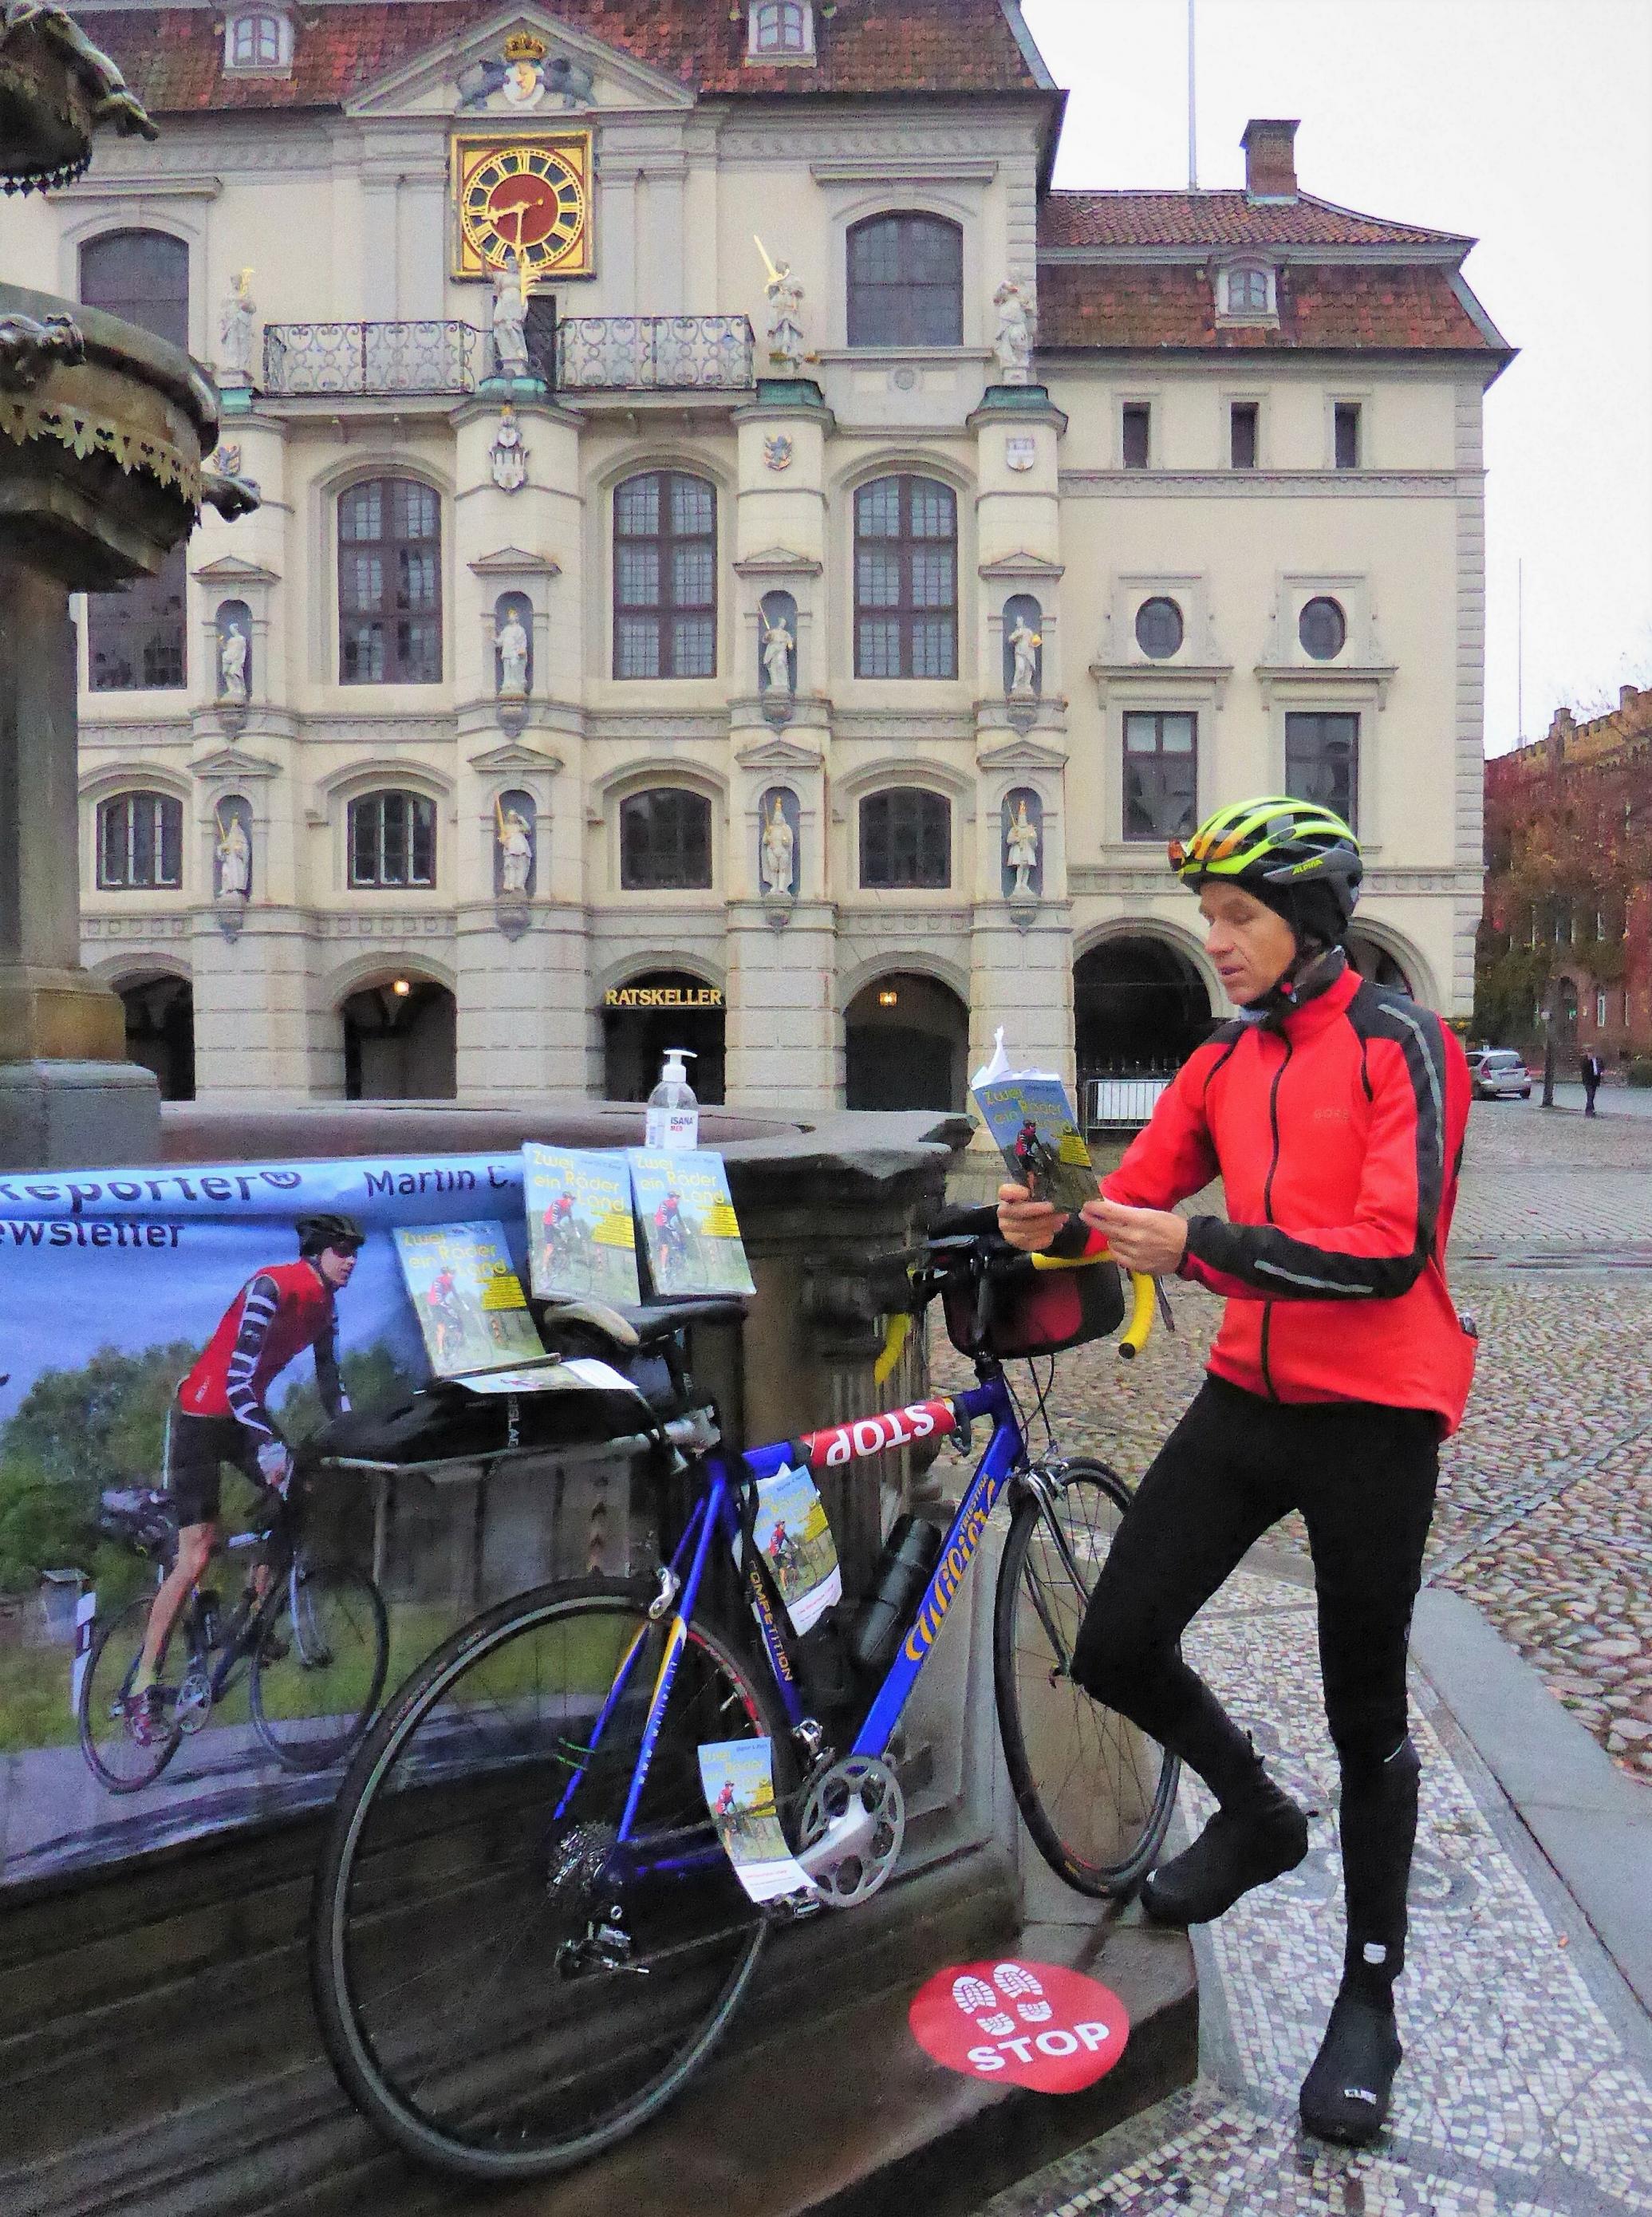 Während das Rennrad am Marktbrunnen ruht, liest der RadelndeReporter vor dem Hintergrund des Rathauses aus seinem Buch.